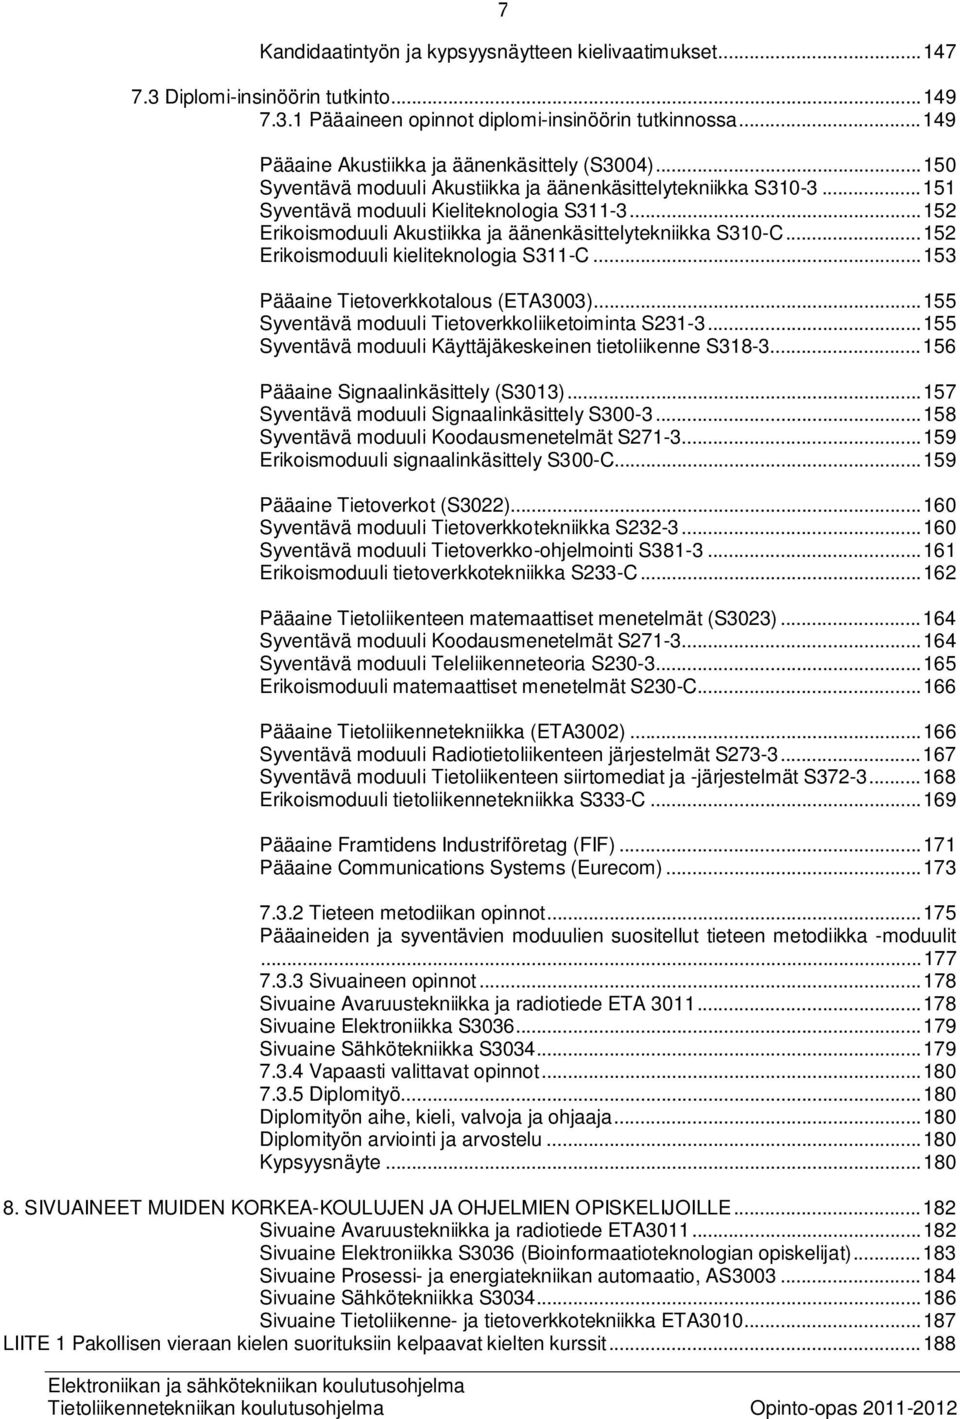 .. 152 Erikoismoduuli Akustiikka ja äänenkäsittelytekniikka S310-C... 152 Erikoismoduuli kieliteknologia S311-C... 153 Pääaine Tietoverkkotalous (ETA3003).